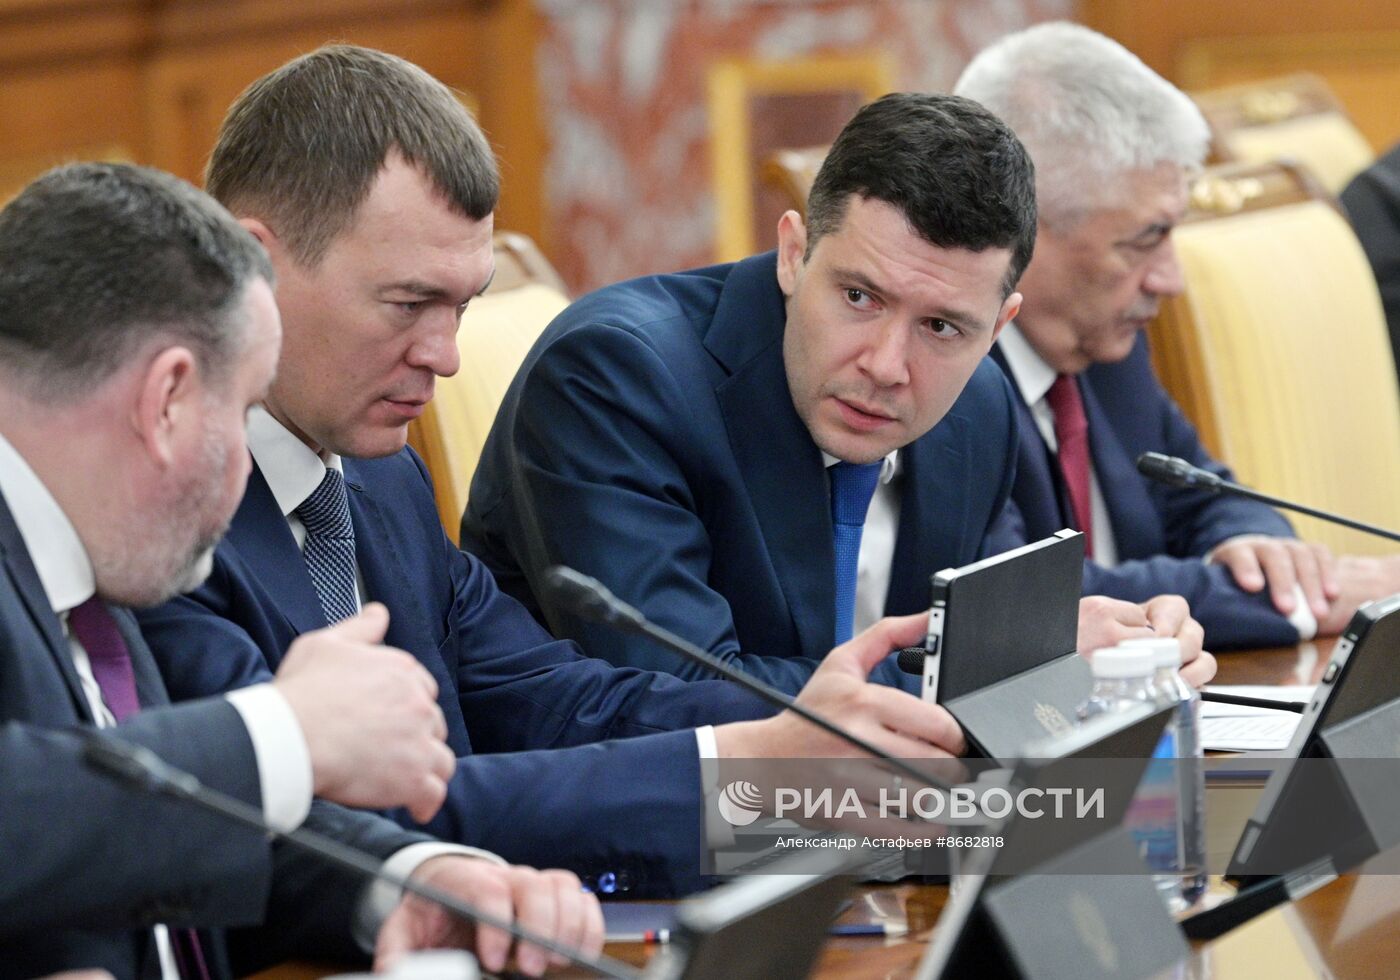 Первое заседание правительства РФ в новом составе